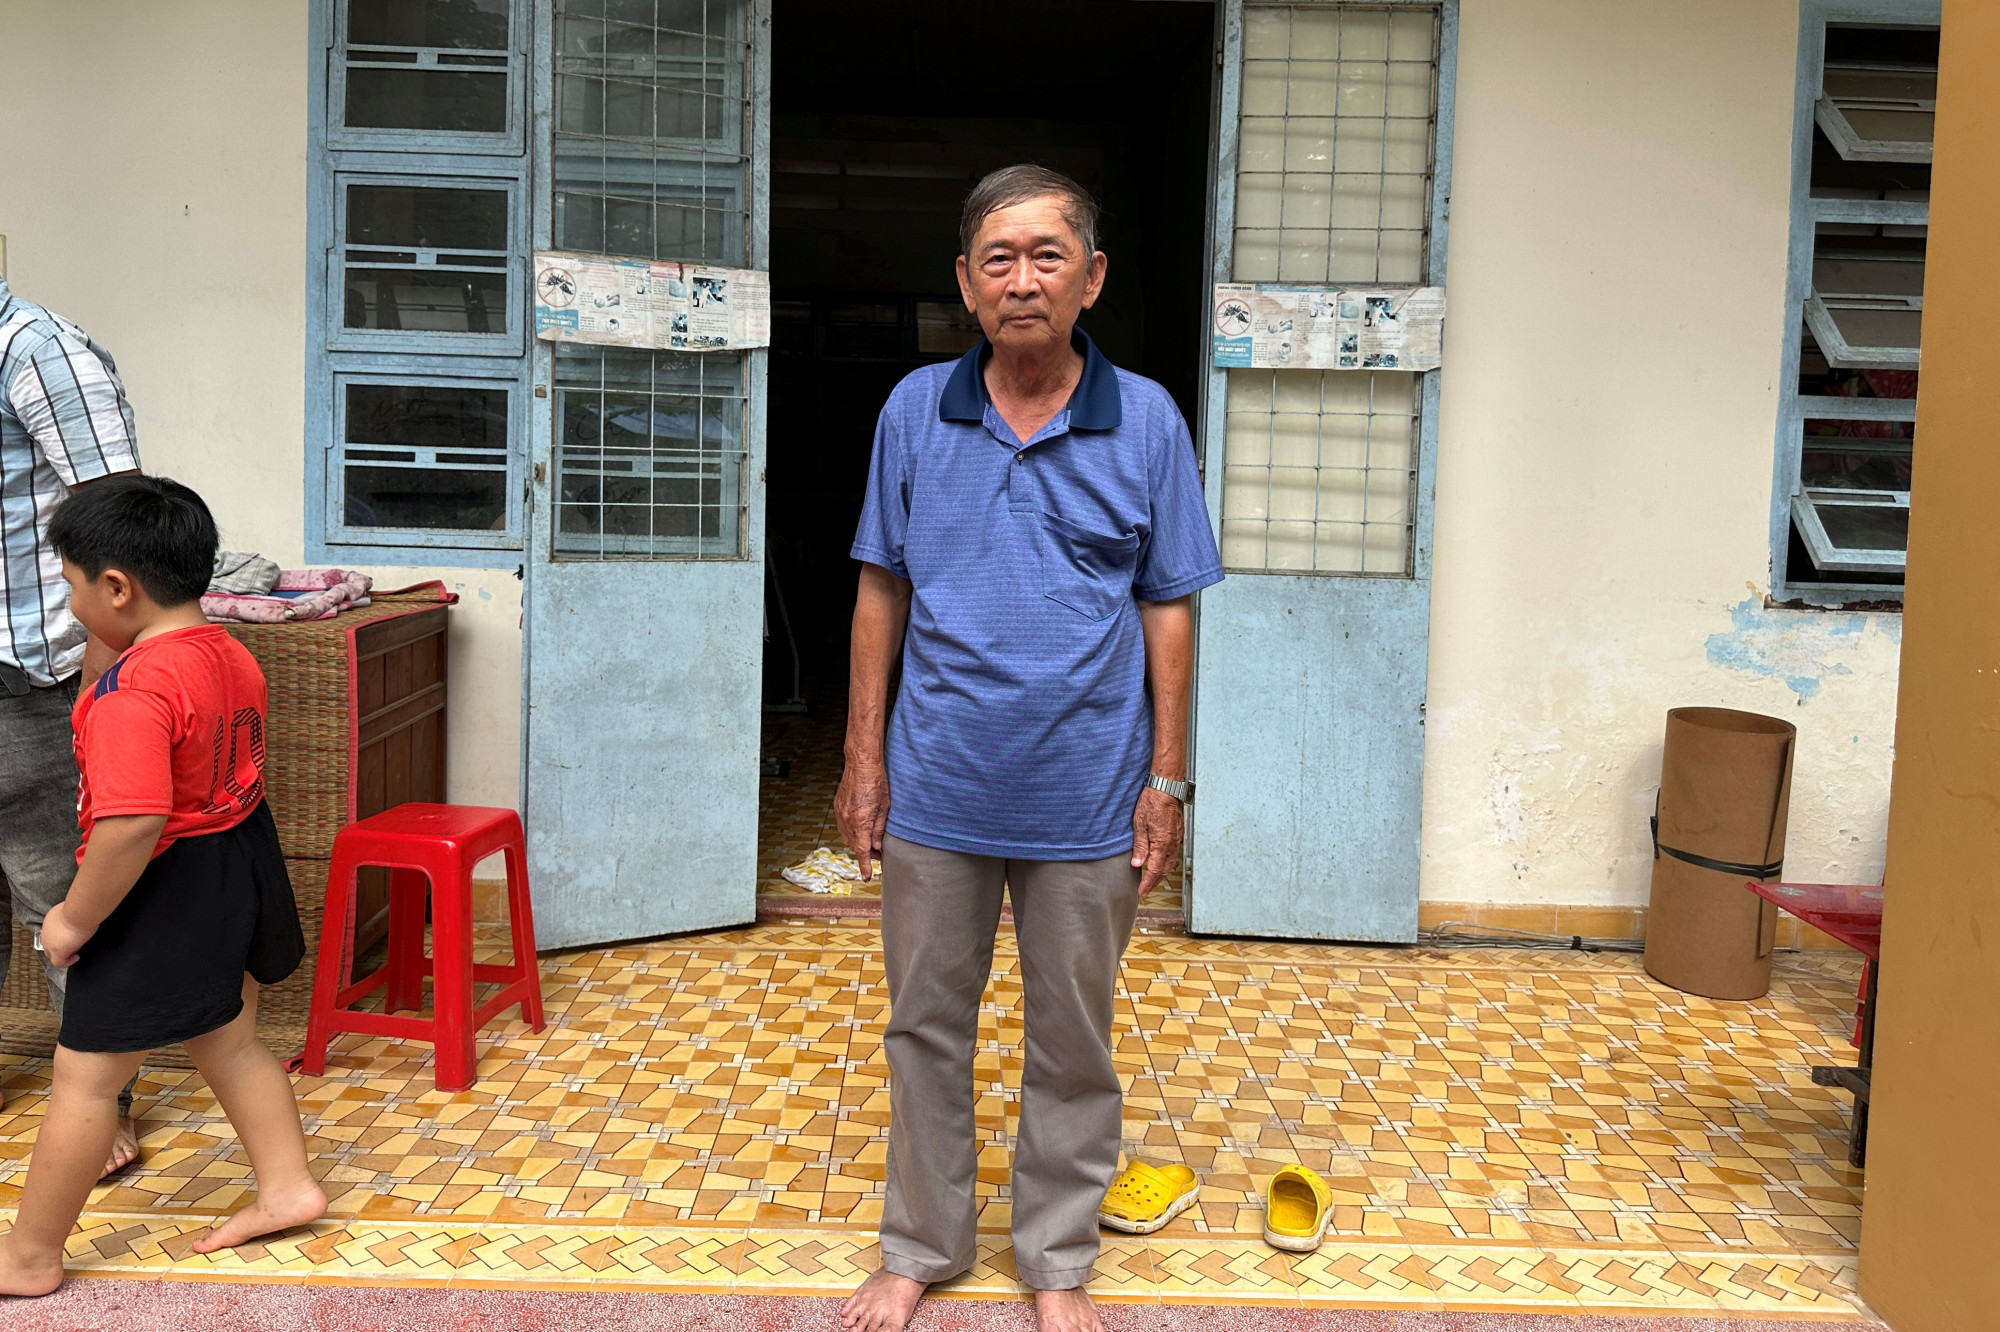 Nhà cửa không còn sau vụ sạt lở ven bờ sông Tiền, ông Dương Văn Tươi cùng các thành viên trong gia đình phải ở tạm tại Nhà văn hóa 